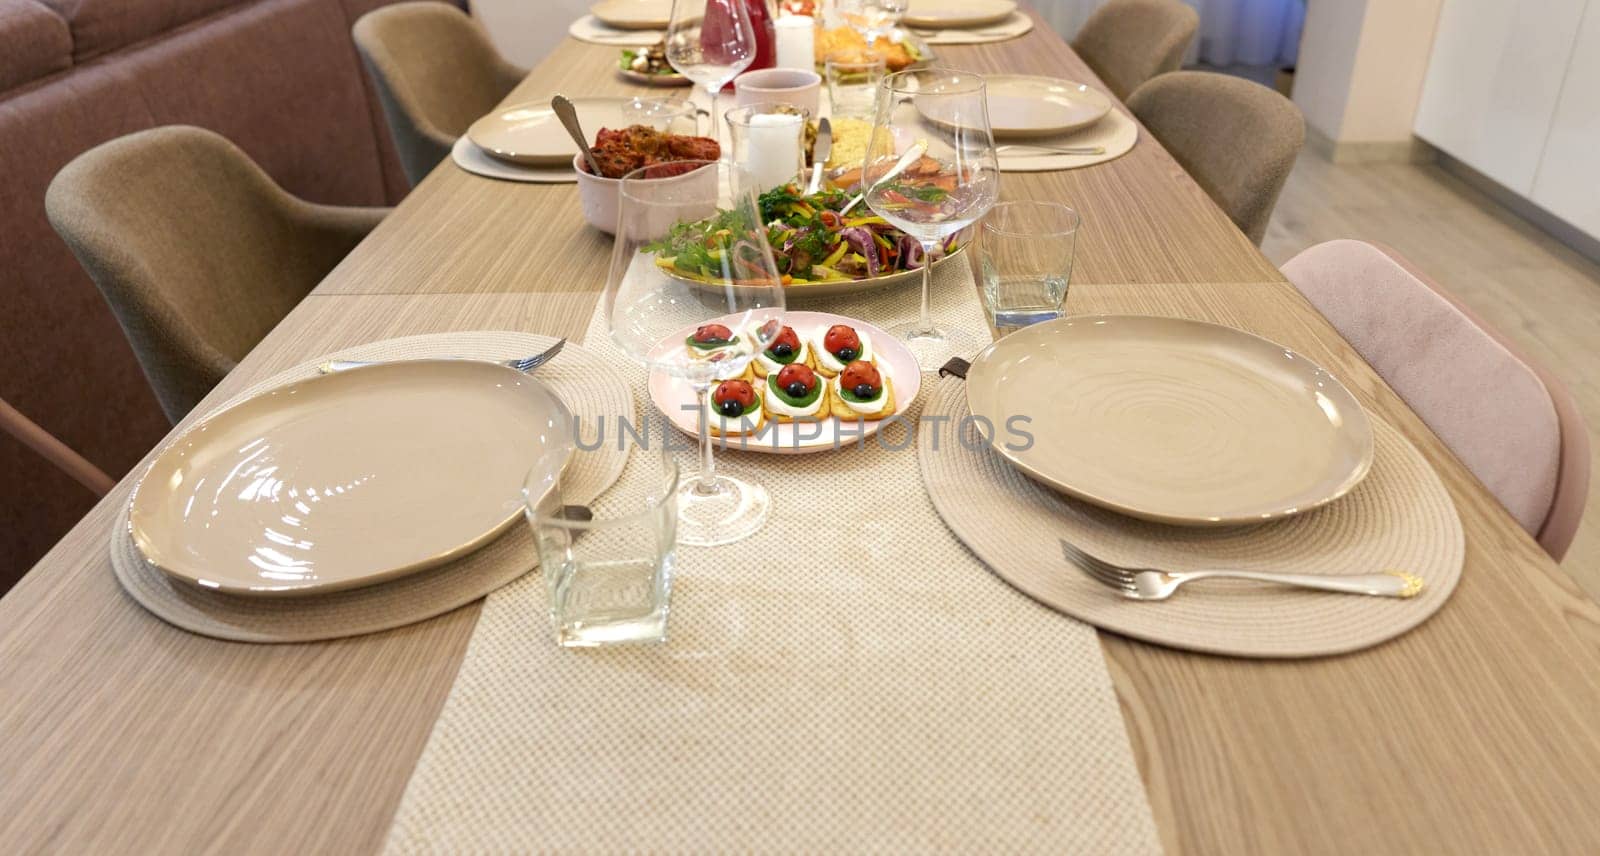 Table served for festive dinner in living room